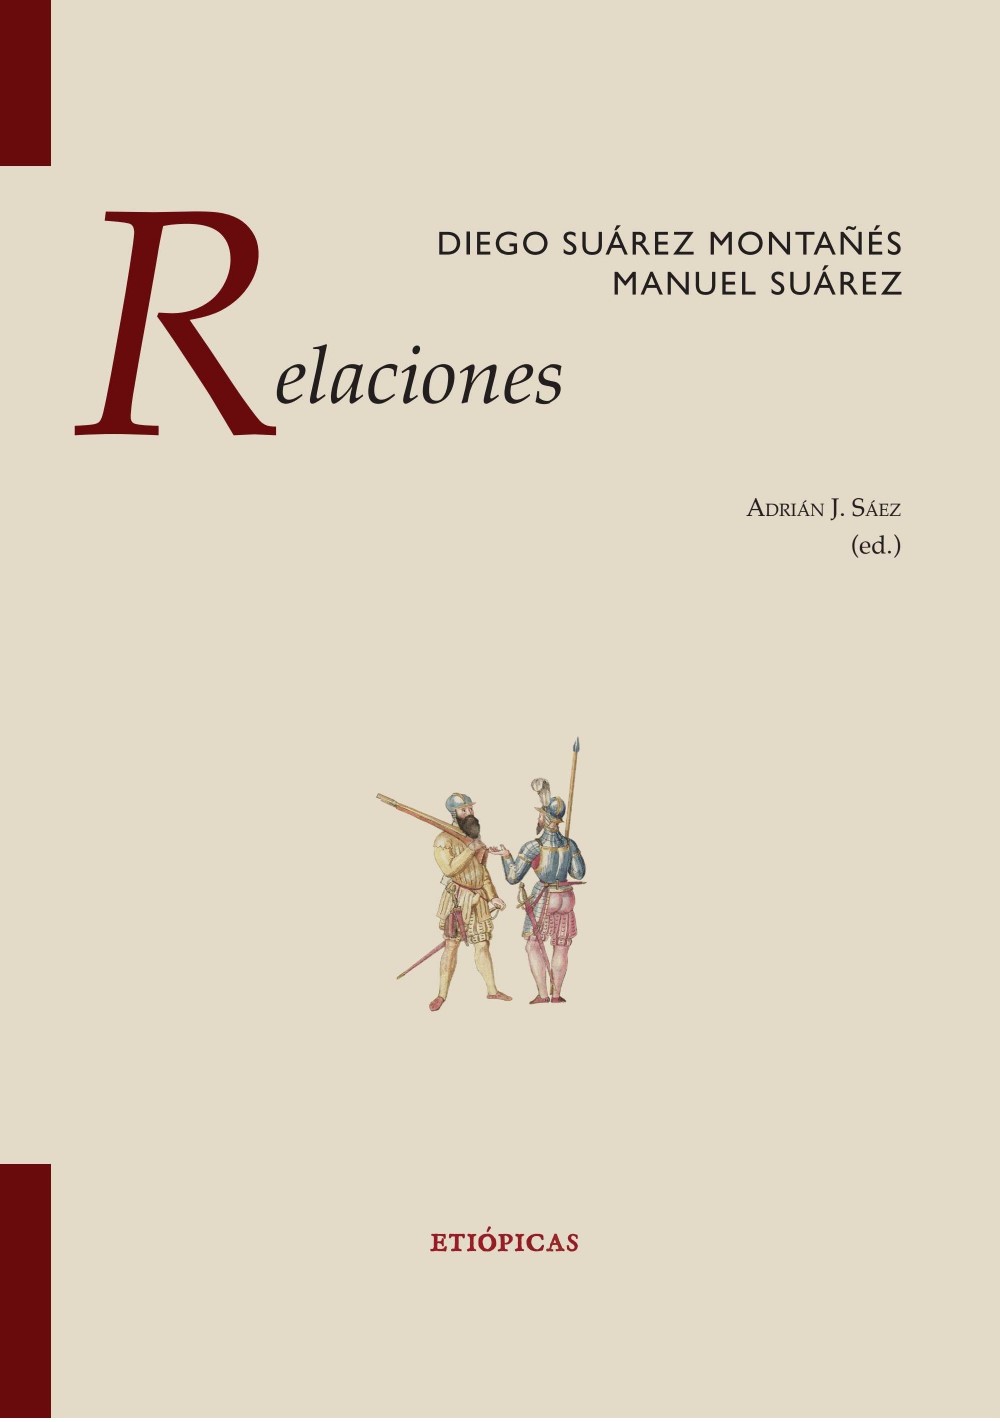 Imagen de portada del libro Diego Suárez Montañés, Manuel Suárez